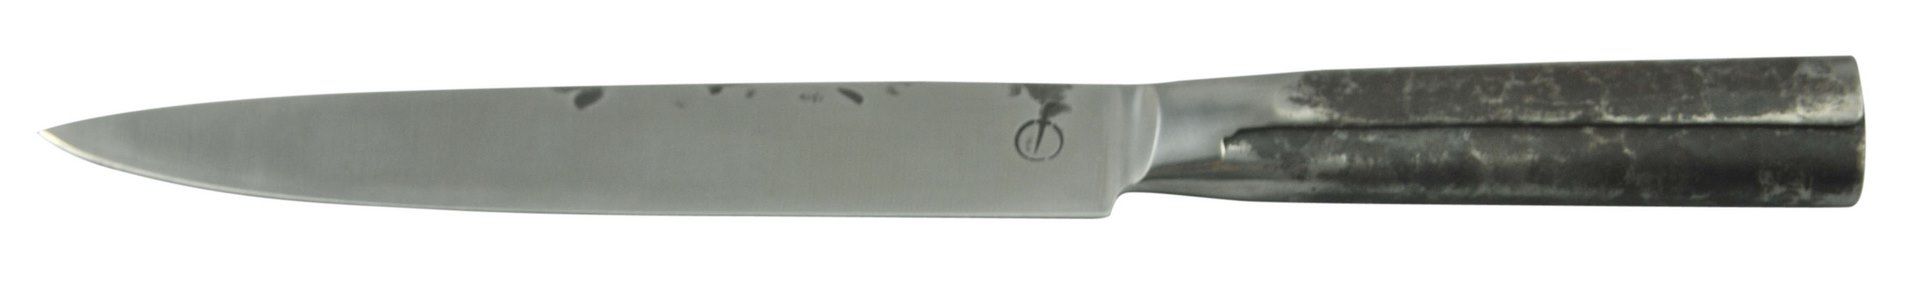 Filetovací nůž Forged Intense 20,5 cm - Chefshop.cz